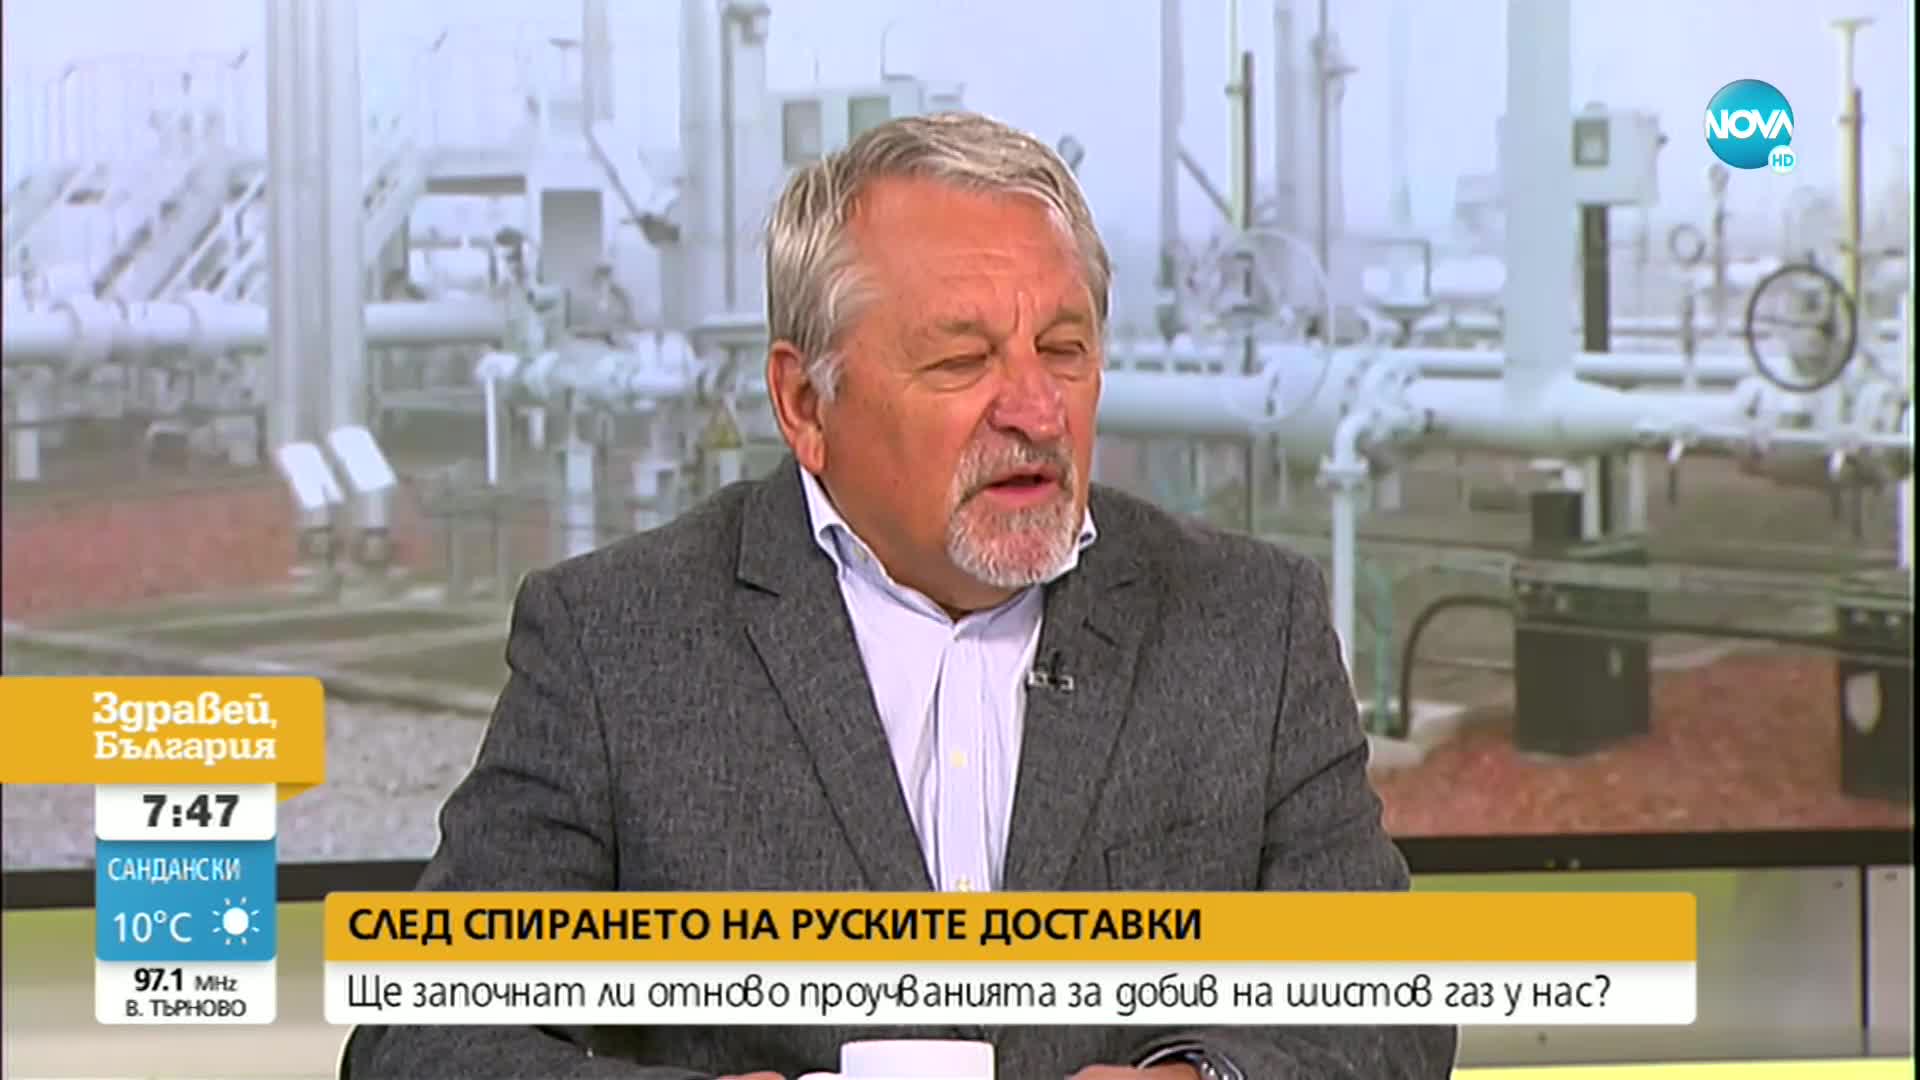 Хиновски: В България има големи залежи на газ, това плаши монополиста "Газпром"